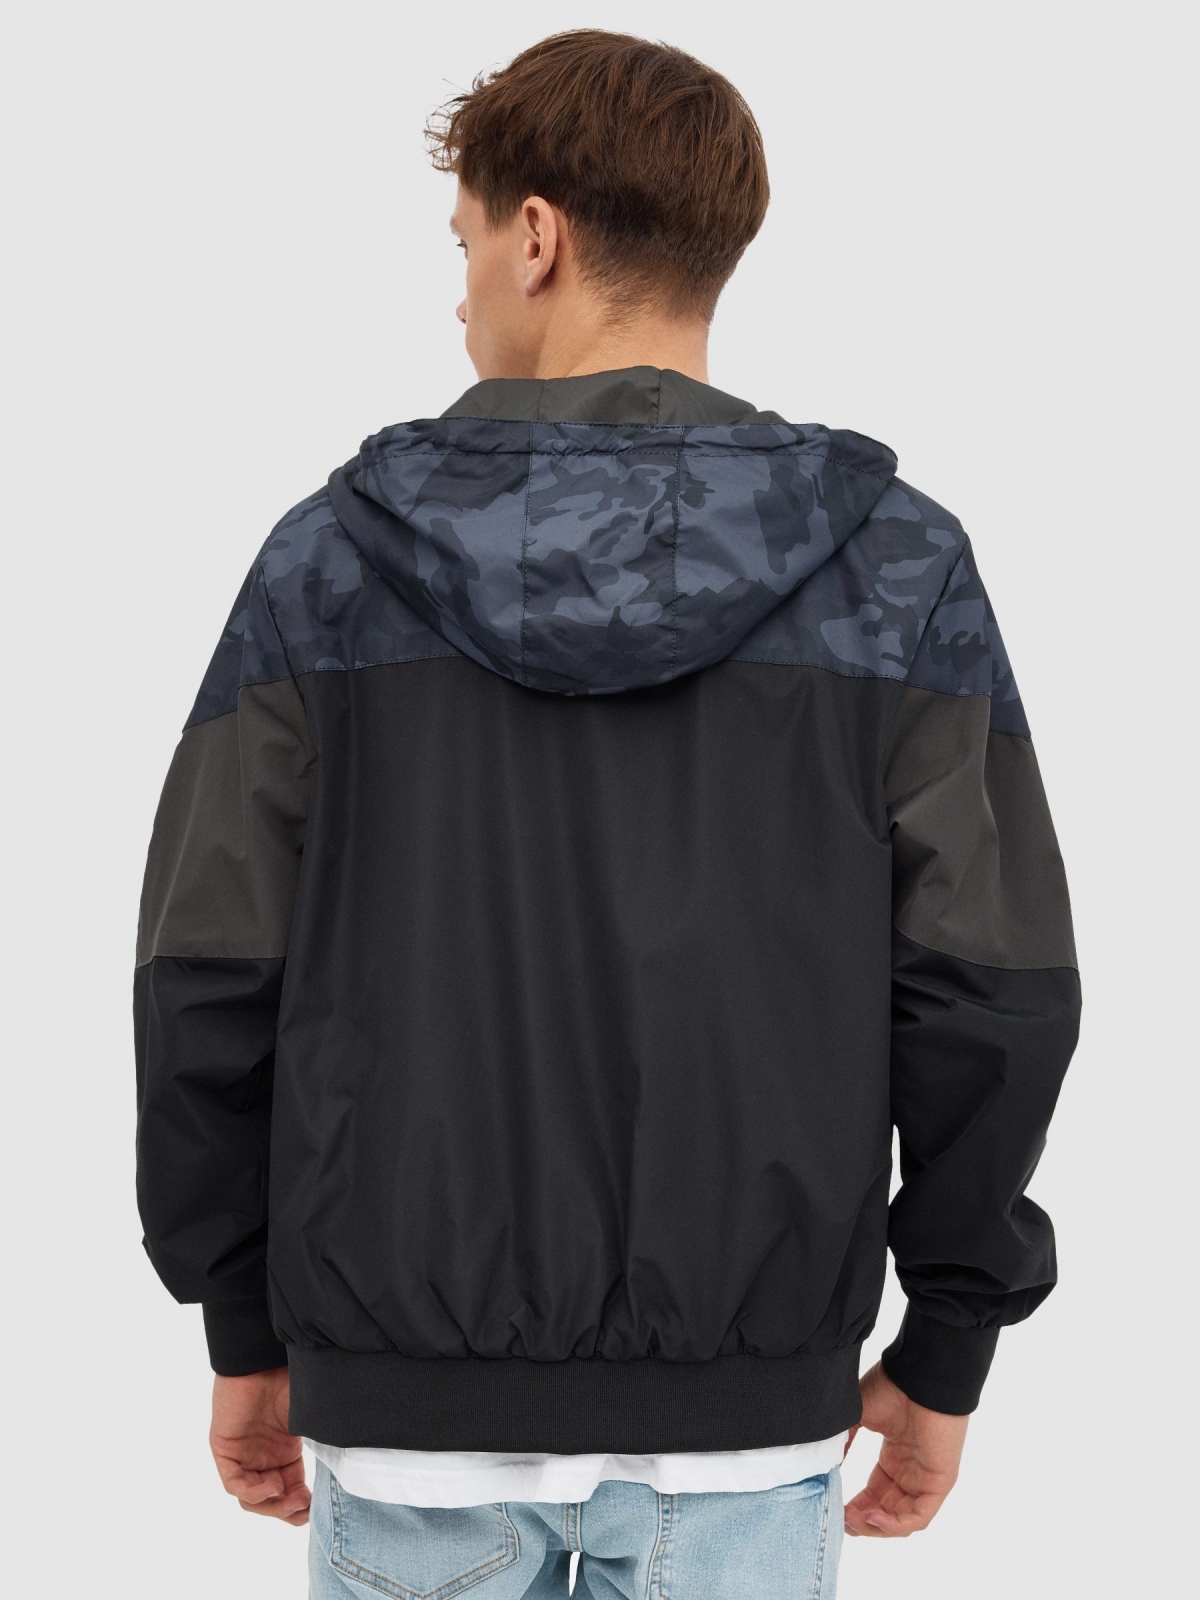 Nylon camouflage jacket black middle back view